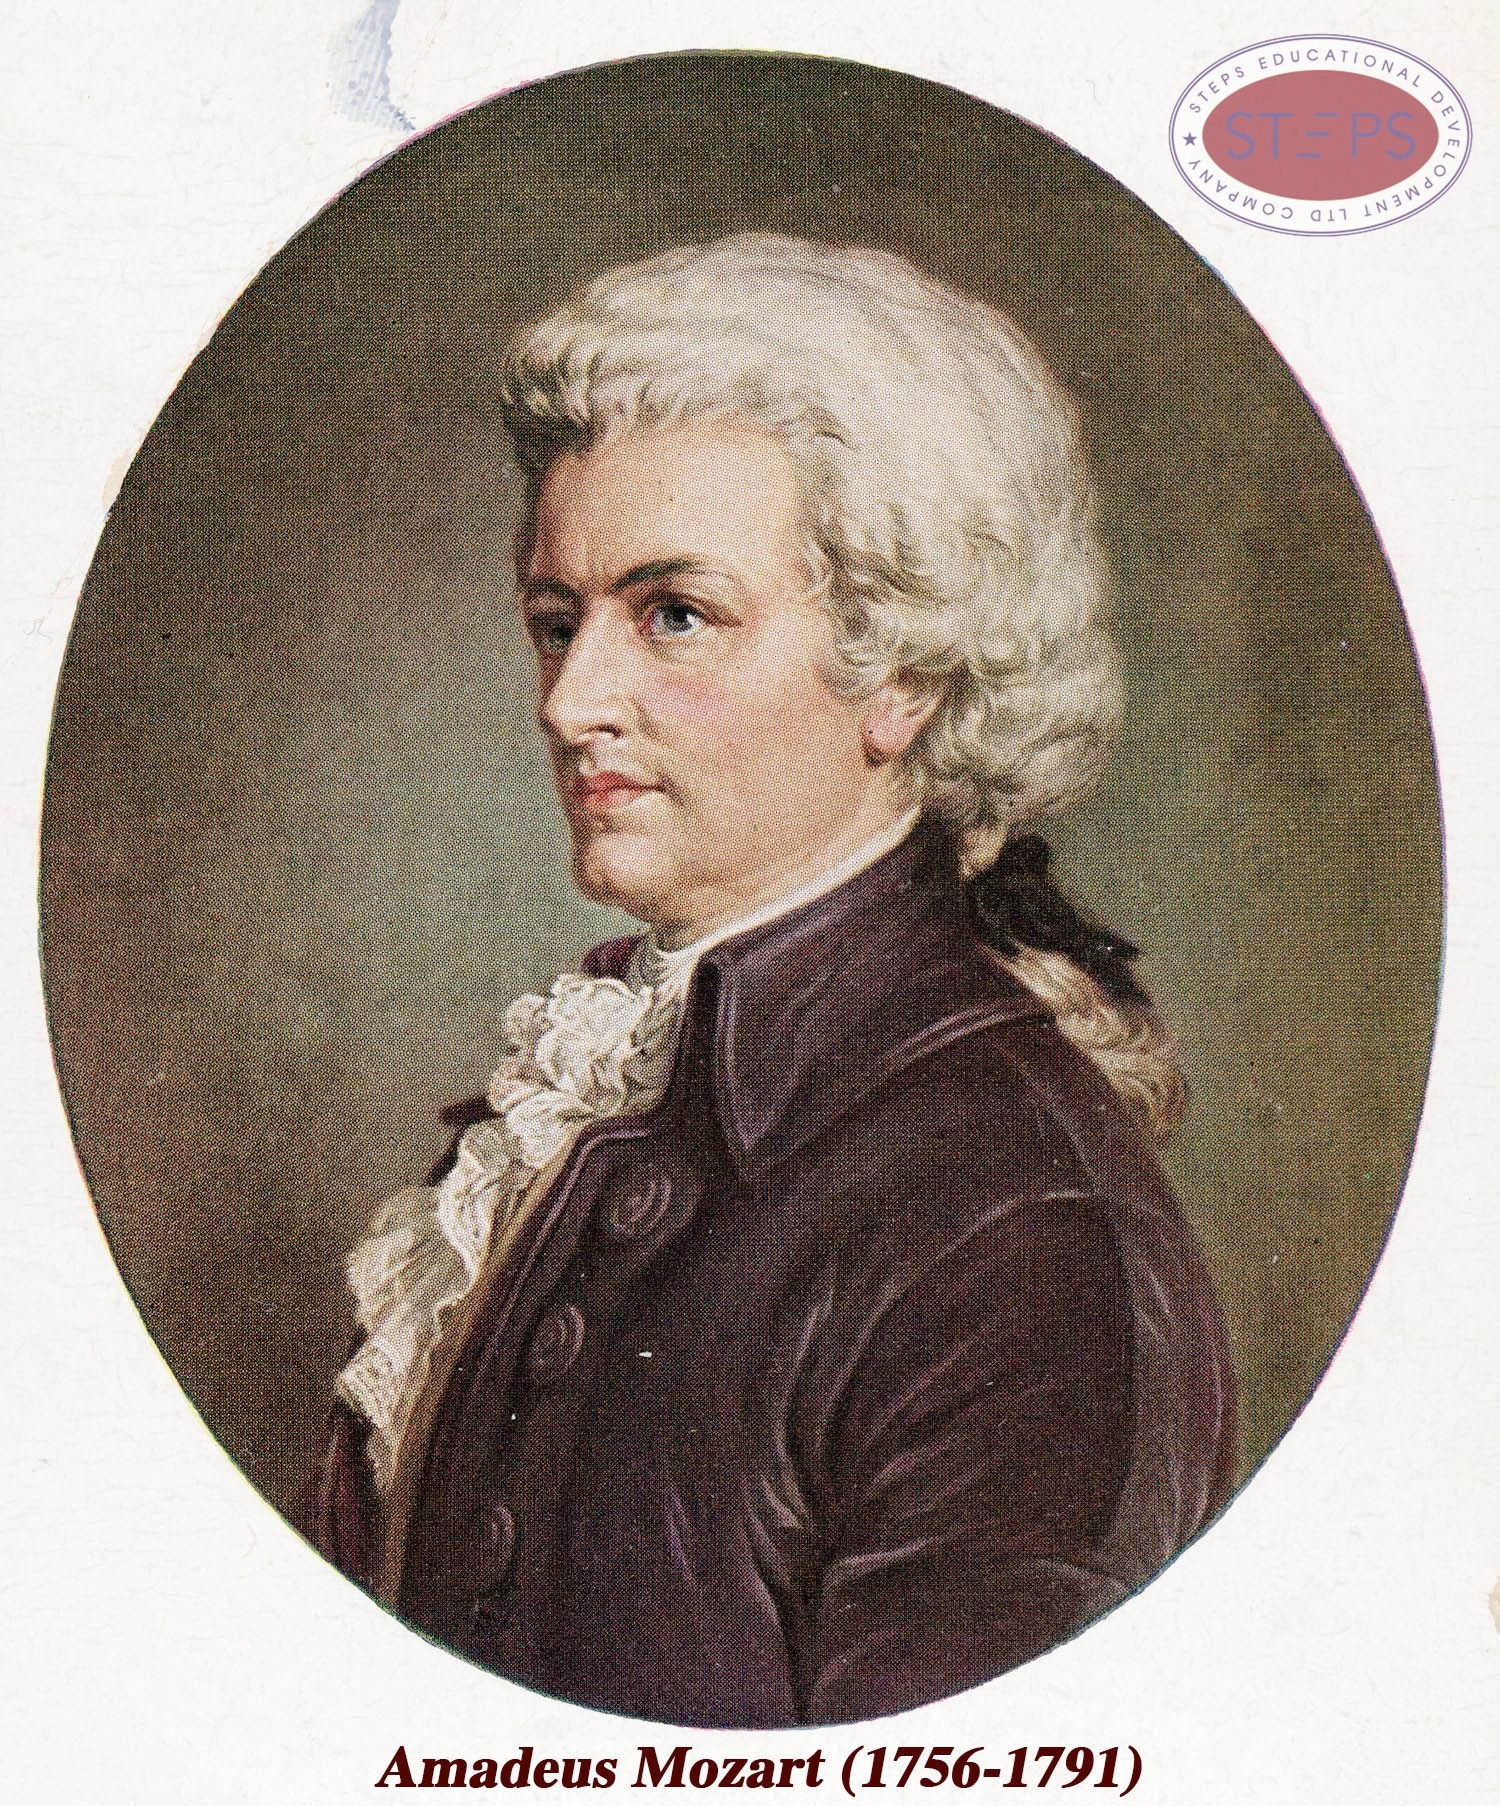 http://www.steps.edu.vn/Amadeus Mozart